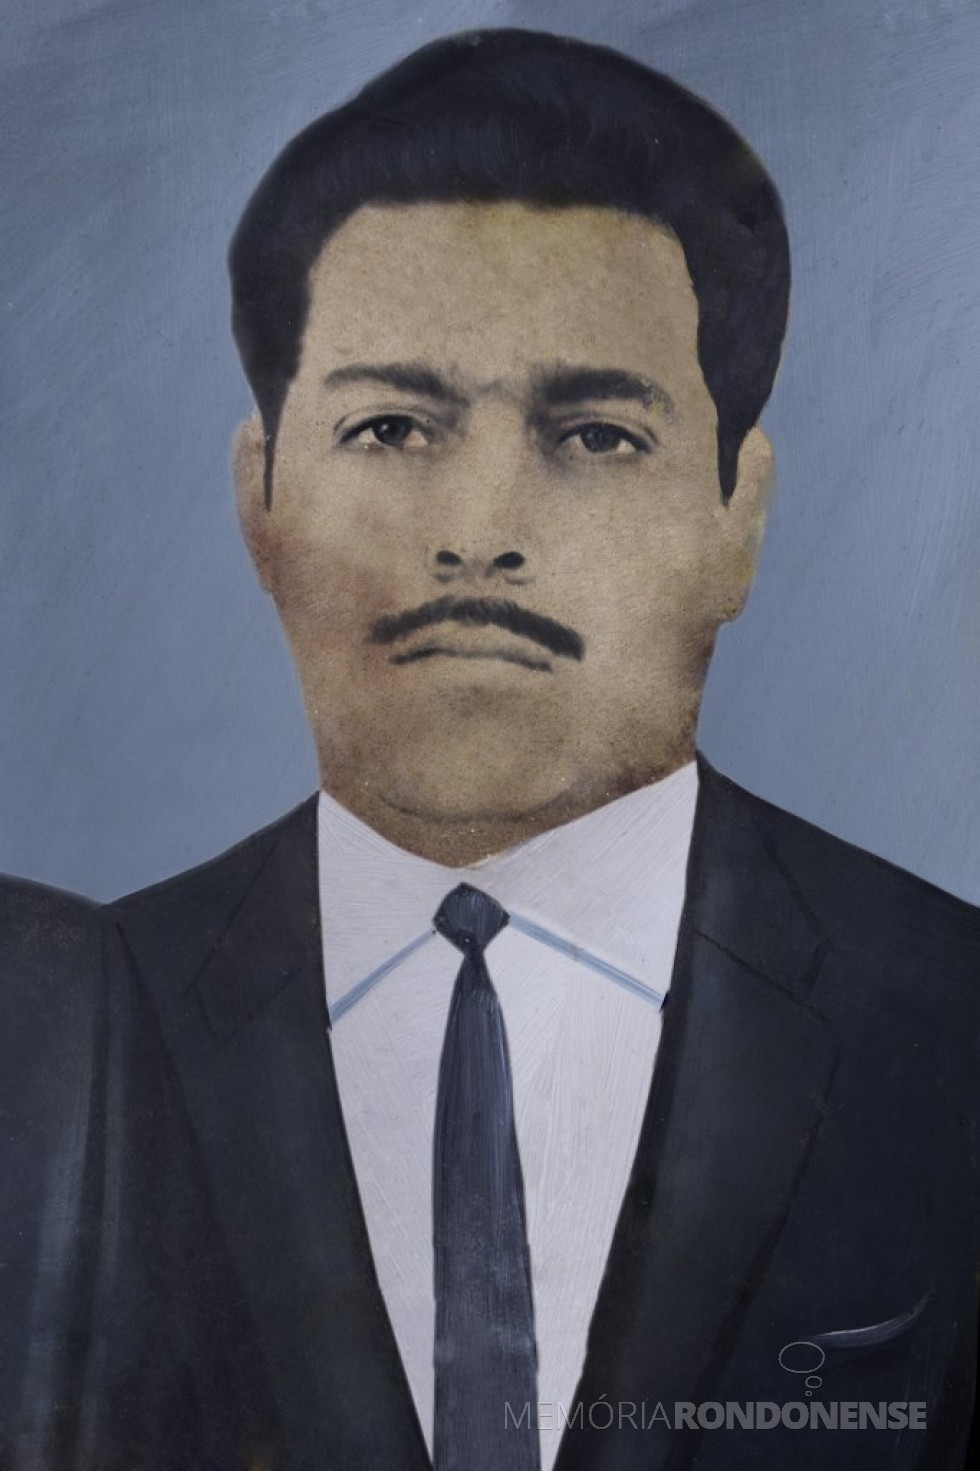 Dr. Jossoé do Amaral Campos falecido em 20 de maio de 2016. 
Imagem: Acervo Câmara Municipal de Marechal Cândido Rondon - FOTO 14 - 